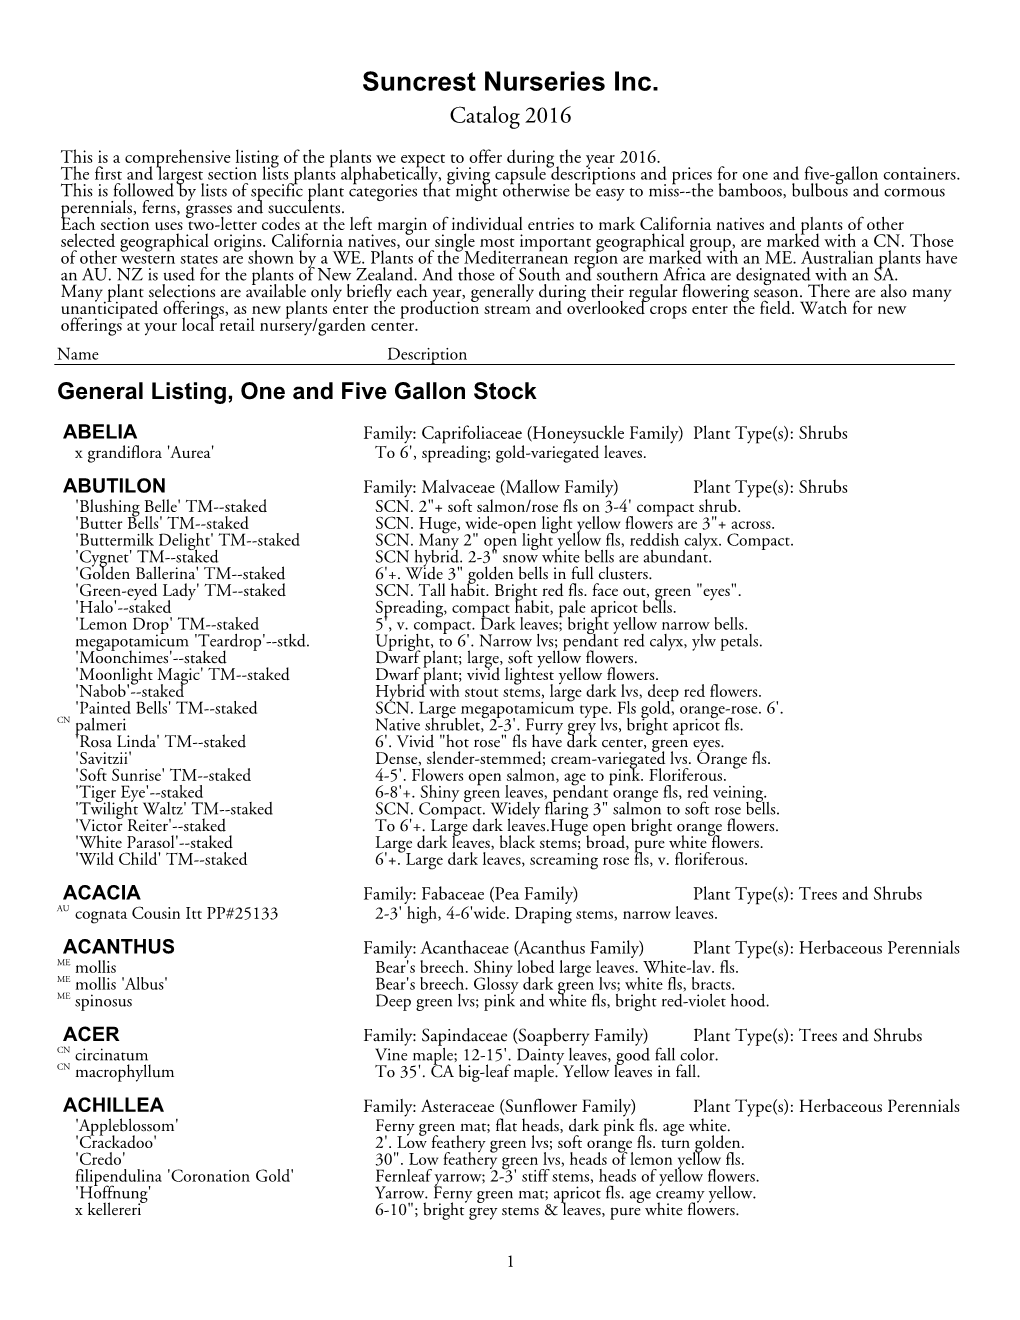 The Suncrest Catalog for 2016, Public Version